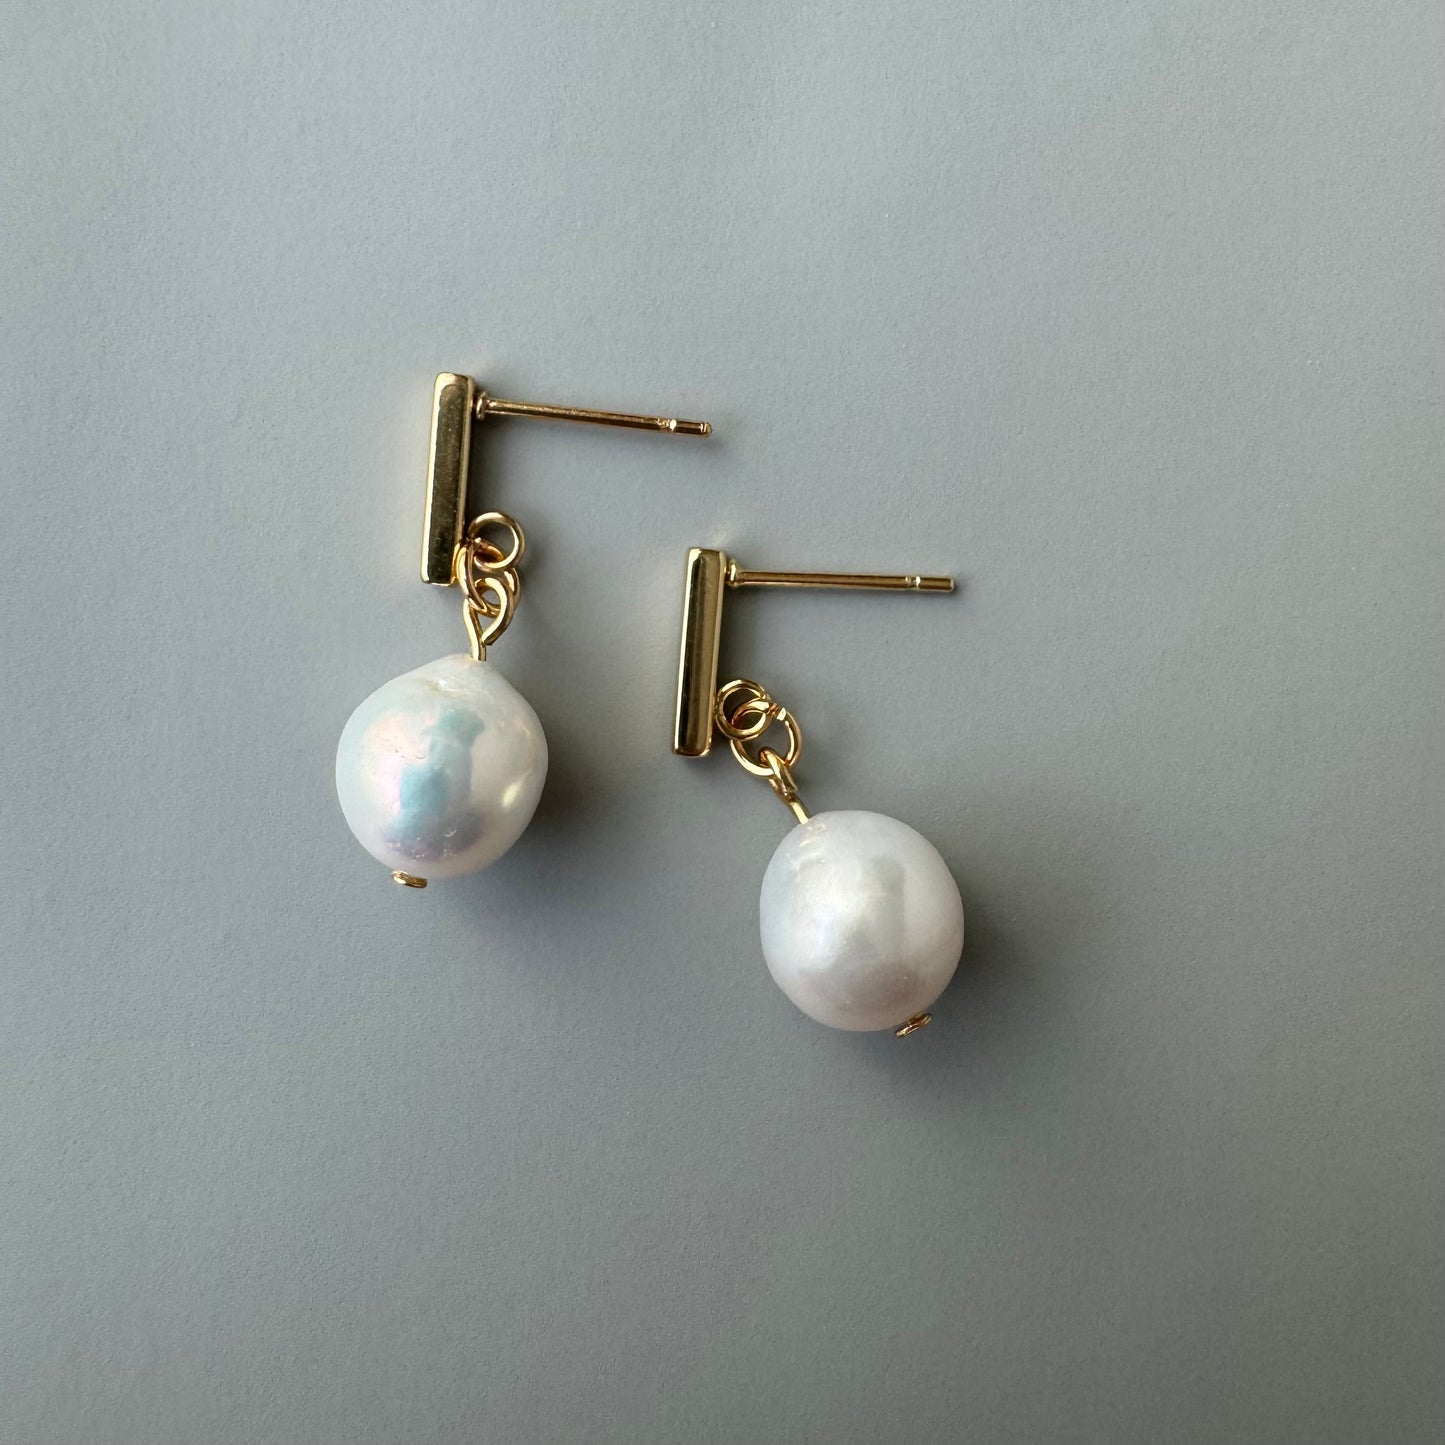 Single pearl everyday earrings